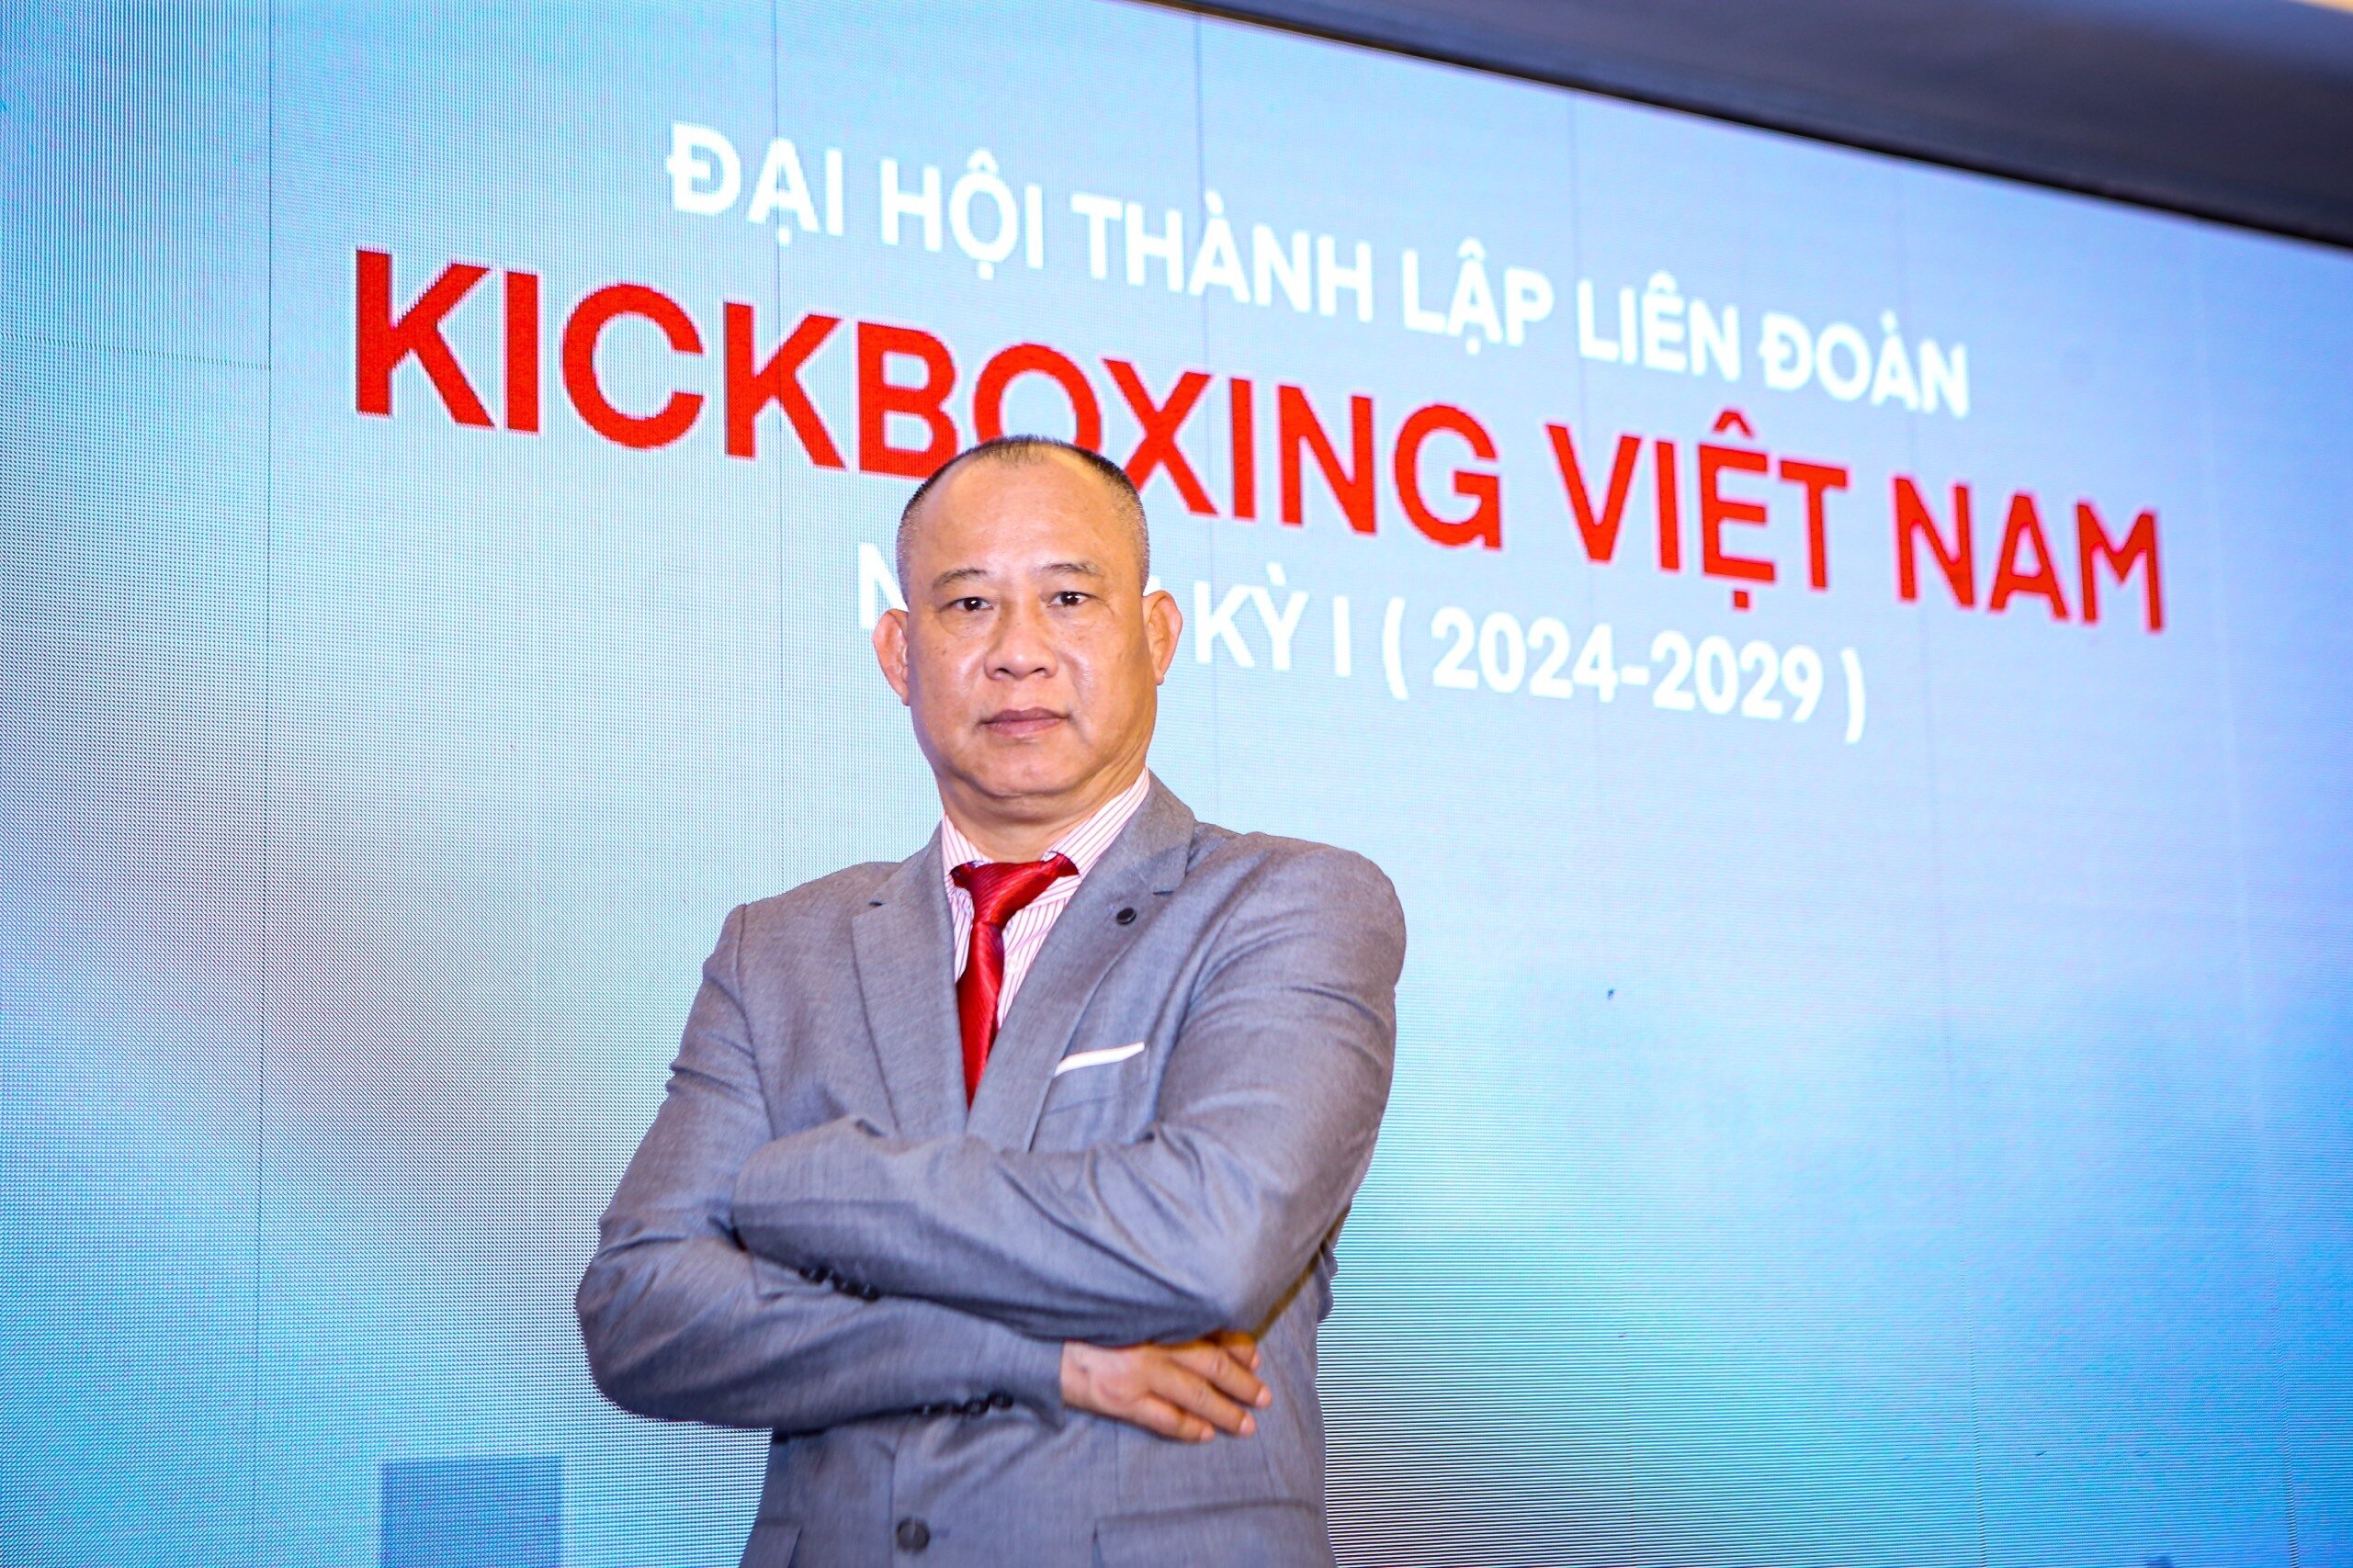 Ông Vũ Đức Thịnh làm Chủ tịch Liên đoàn Kickboxing Việt Nam.